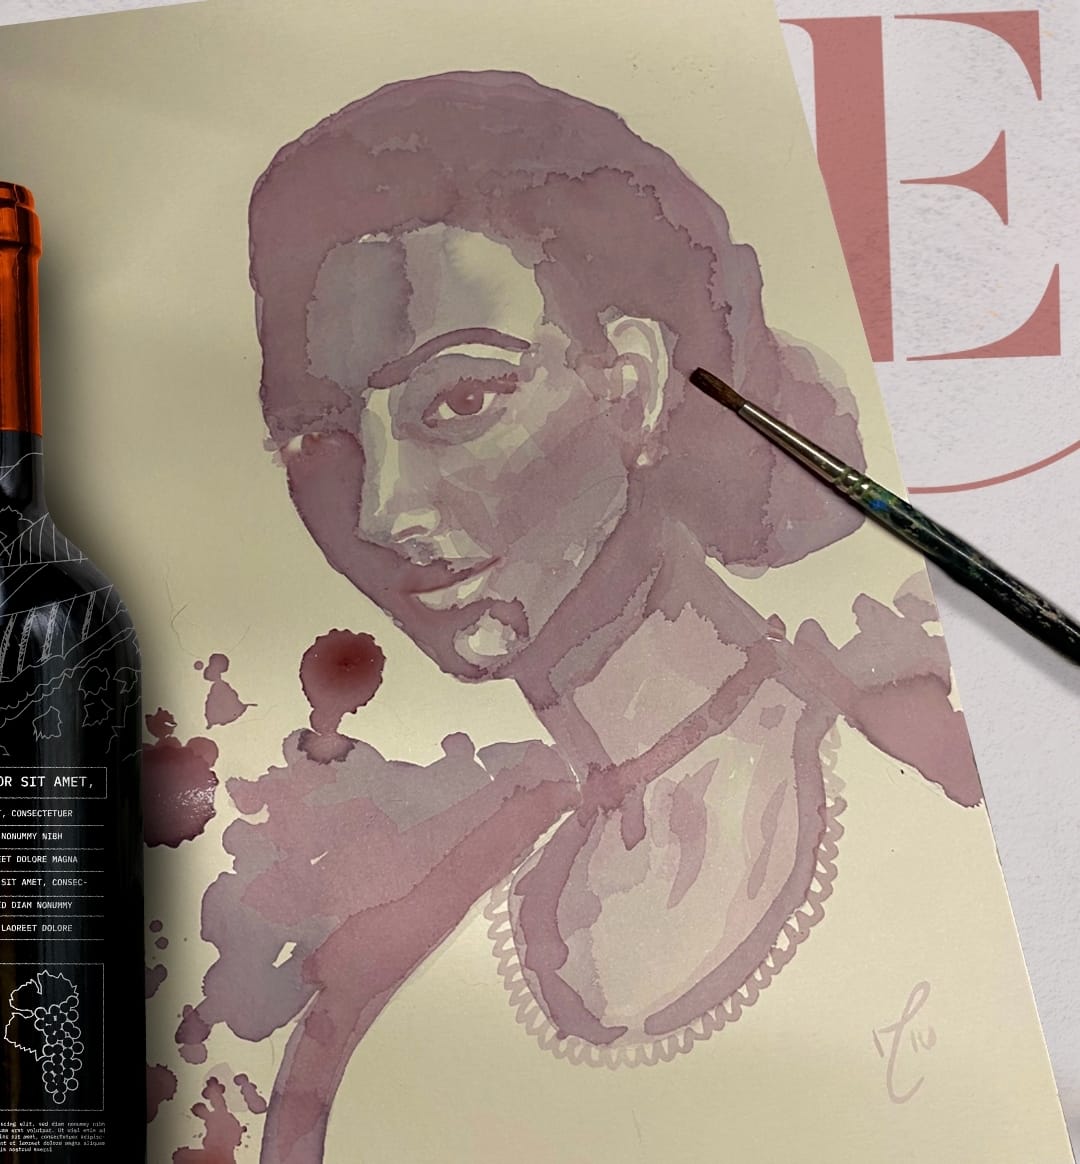 Vinhorela: Enoteca promove workshop de pintura com vinho